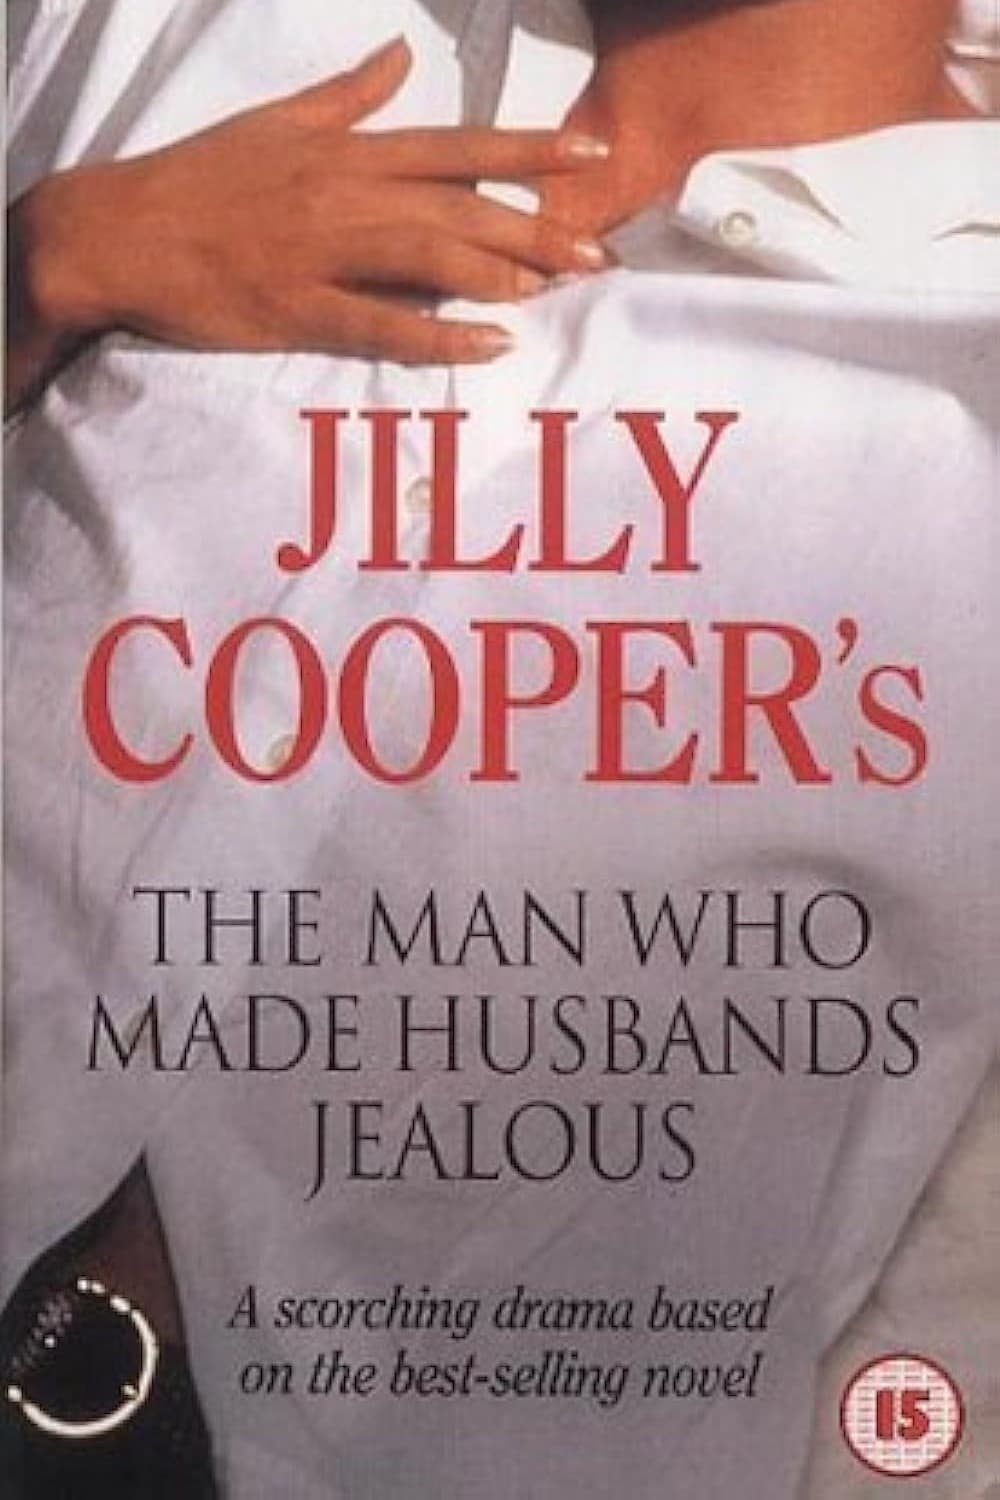 The Man Who Made Husbands Jealous